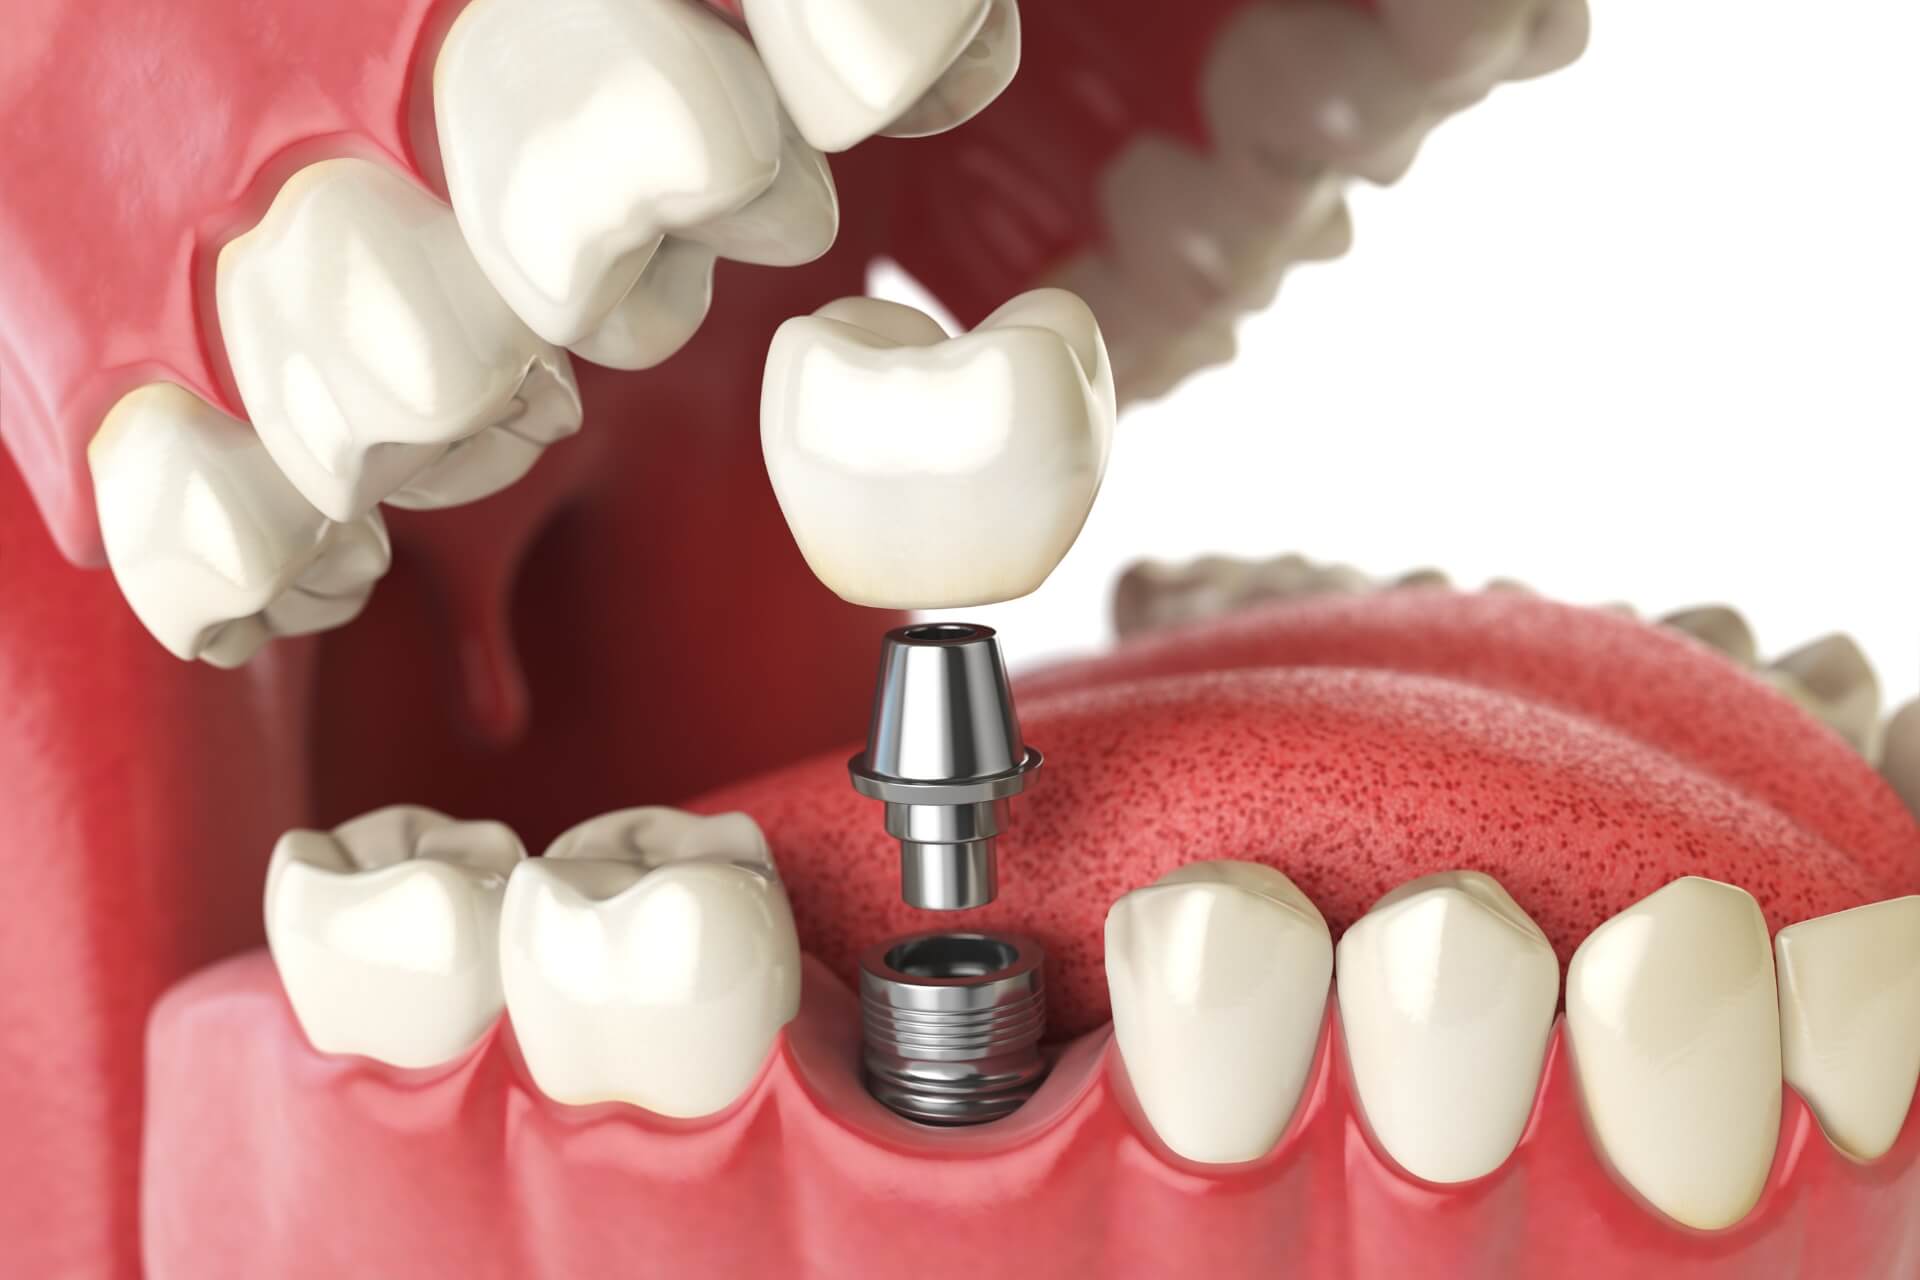 impianto-dentale-sostituzione-dente-mancante-chirurgia-implantare.jpg